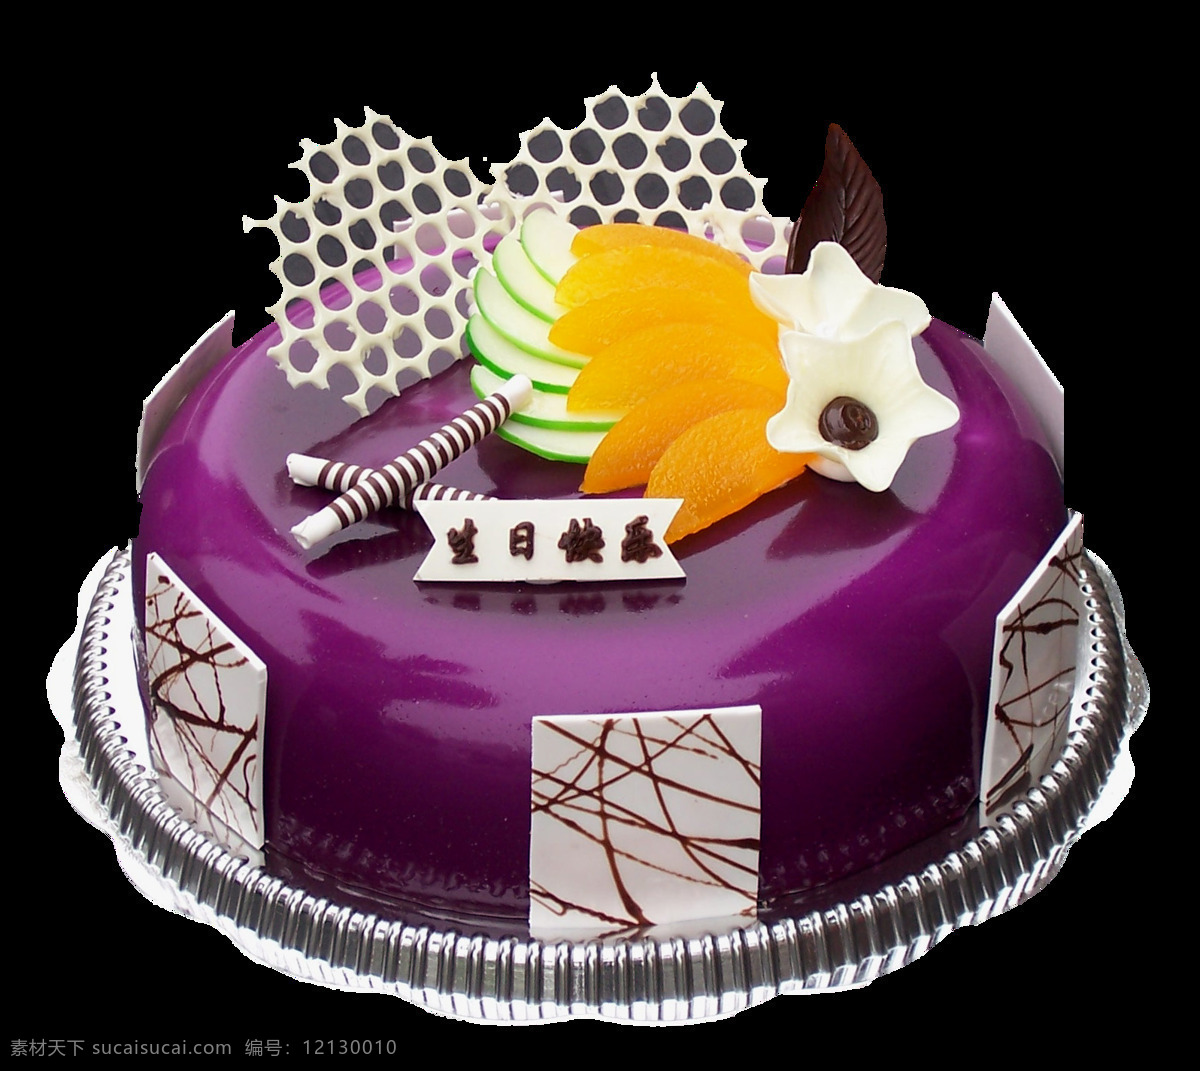 紫色 巧克力 片 生日蛋糕 元素 蛋糕图案设计 果酱蛋糕 精美蛋糕素材 生日蛋糕装饰 圆形蛋糕 紫色蛋糕